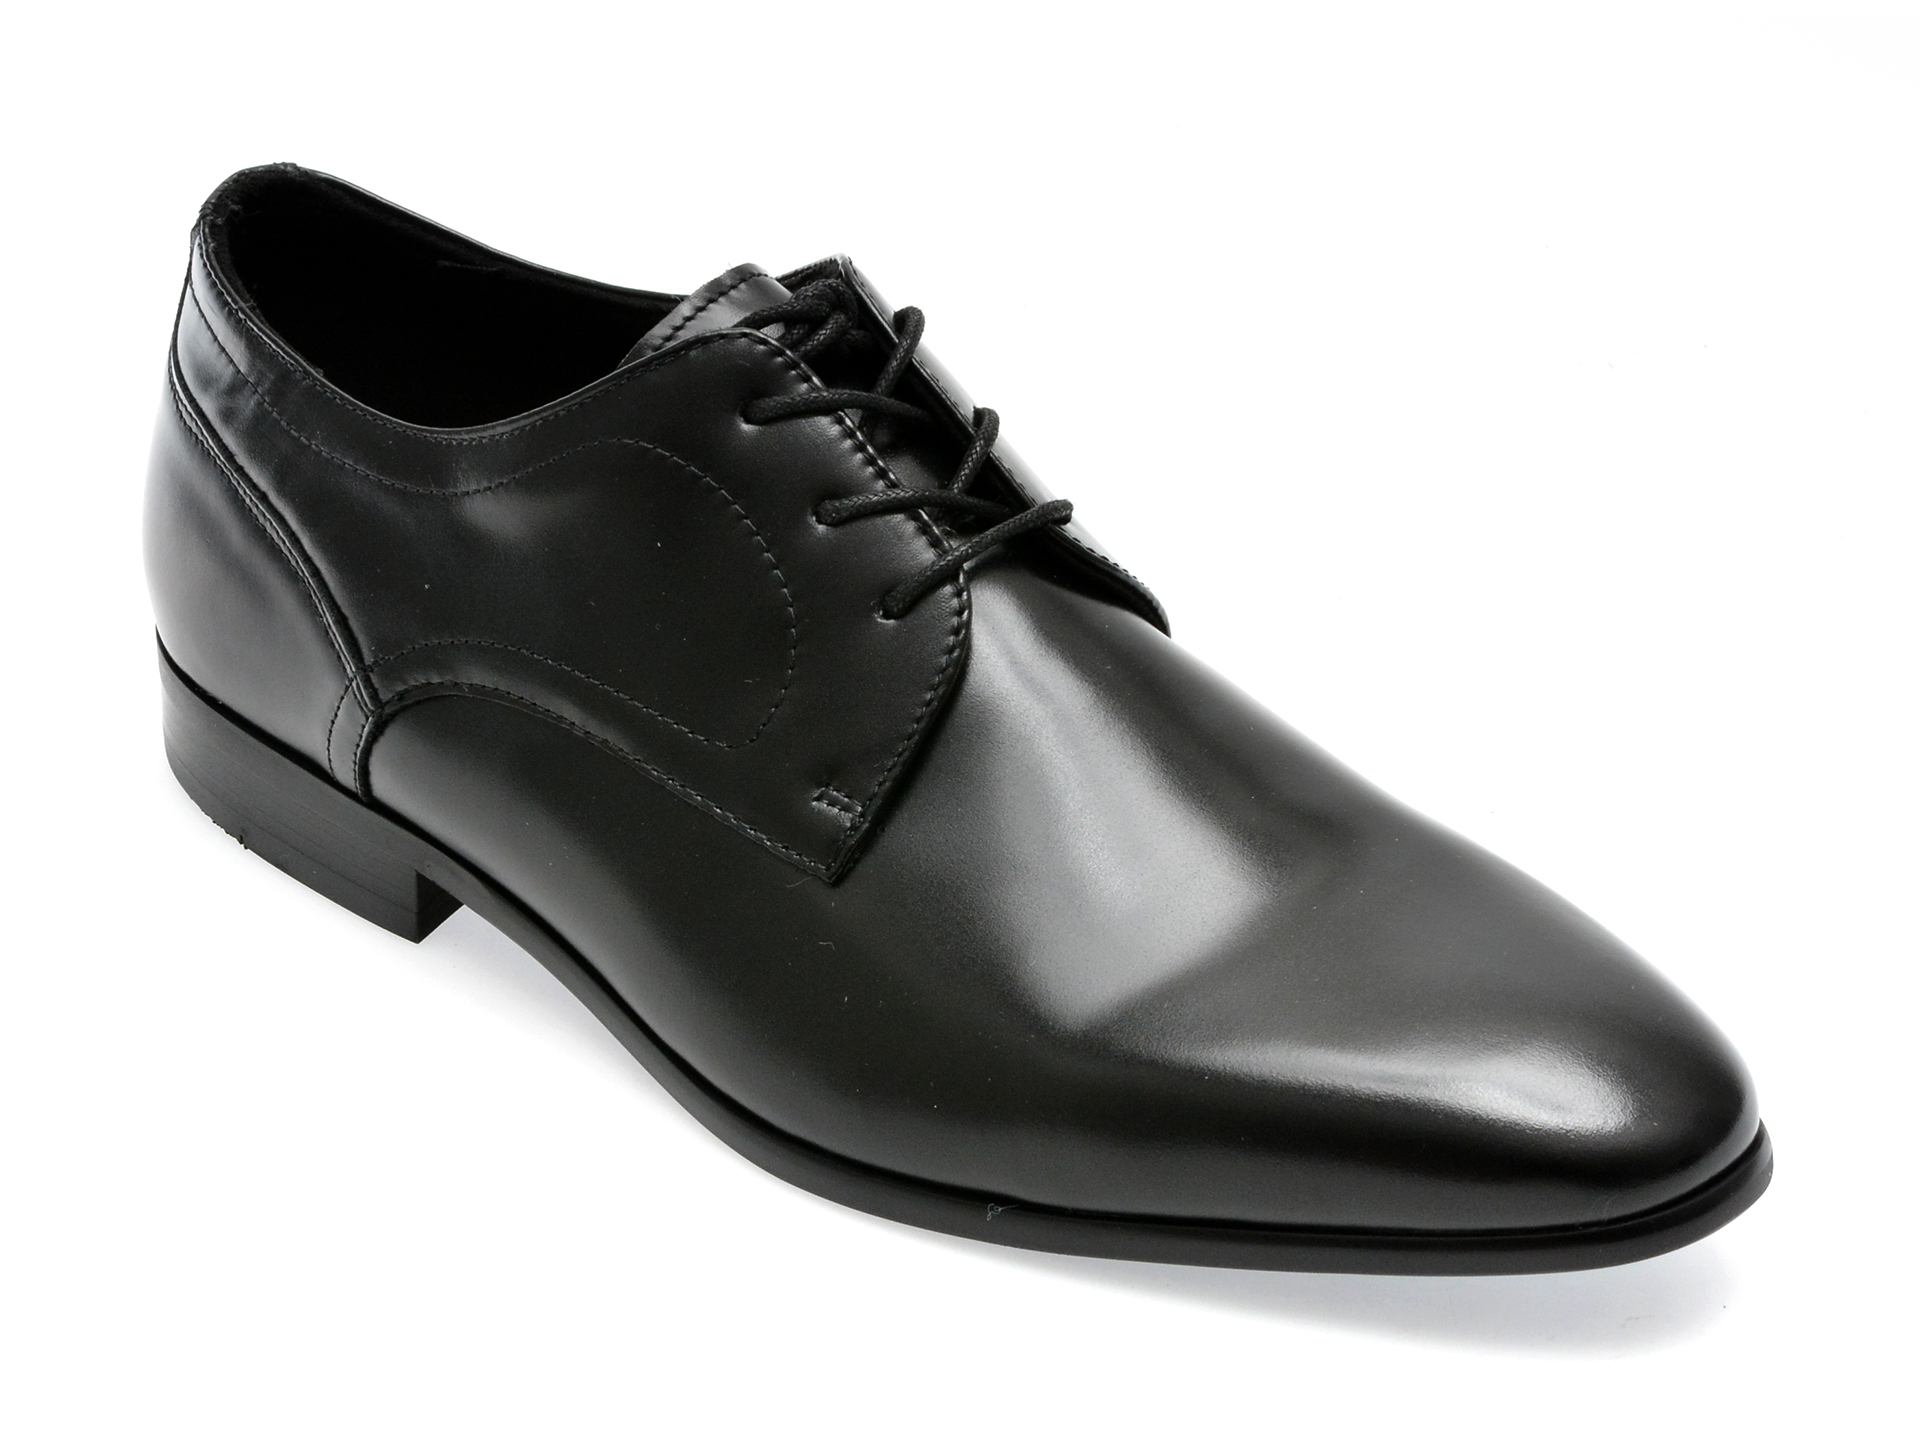 Pantofi ALDO negri, DELFORDFLEX009, din piele naturala /barbati/pantofi